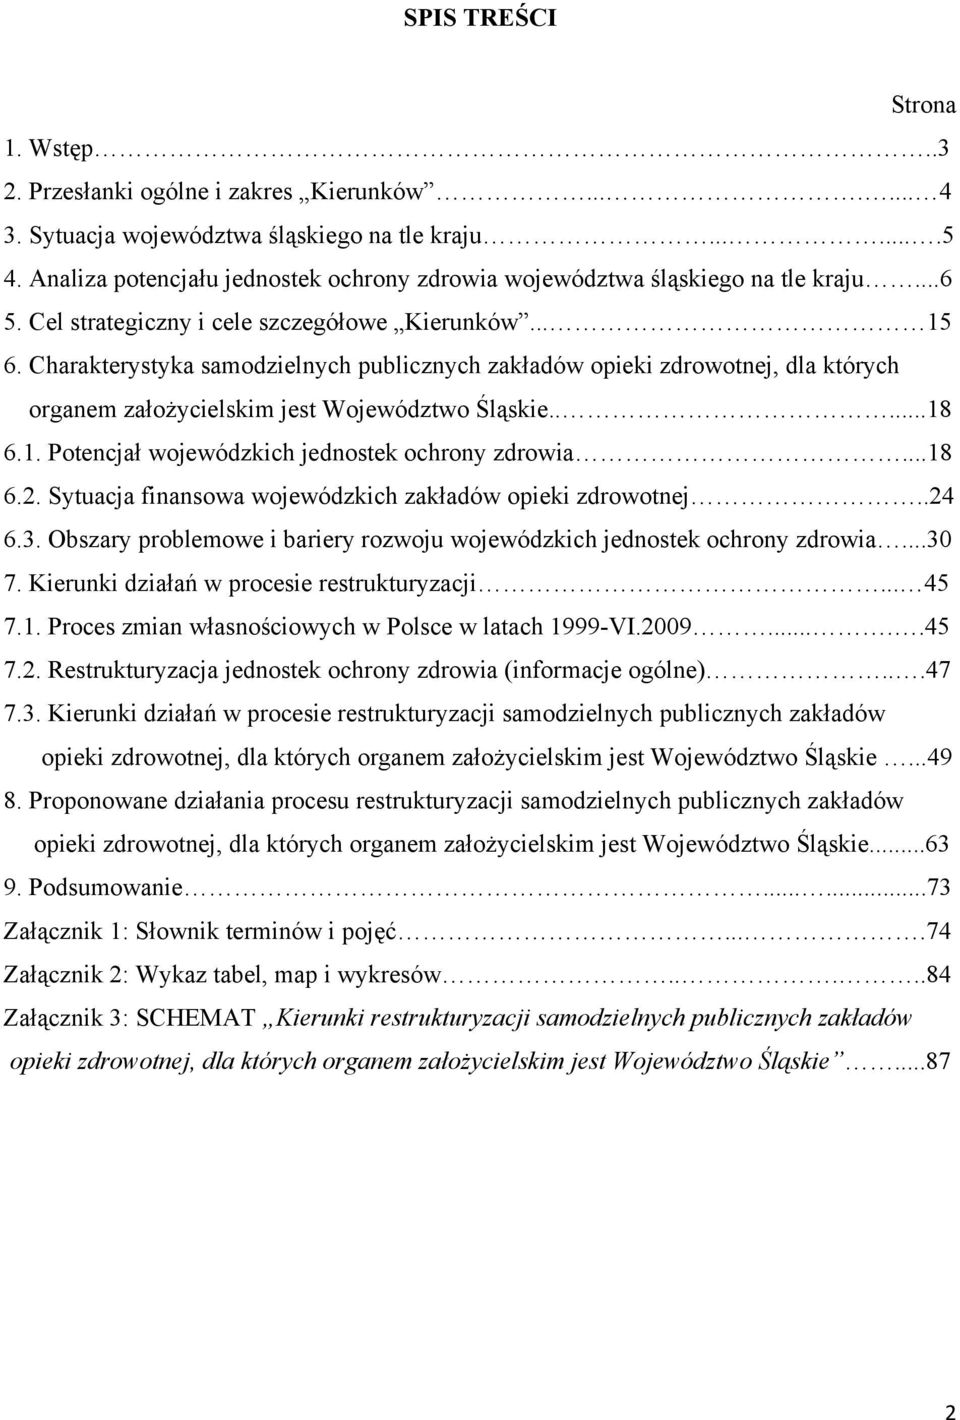 Charakterystyka samodzielnych publicznych zakładów opieki zdrowotnej, dla których organem założycielskim jest Województwo Śląskie.....18 6.1. Potencjał wojewódzkich jednostek ochrony zdrowia...18 6.2.